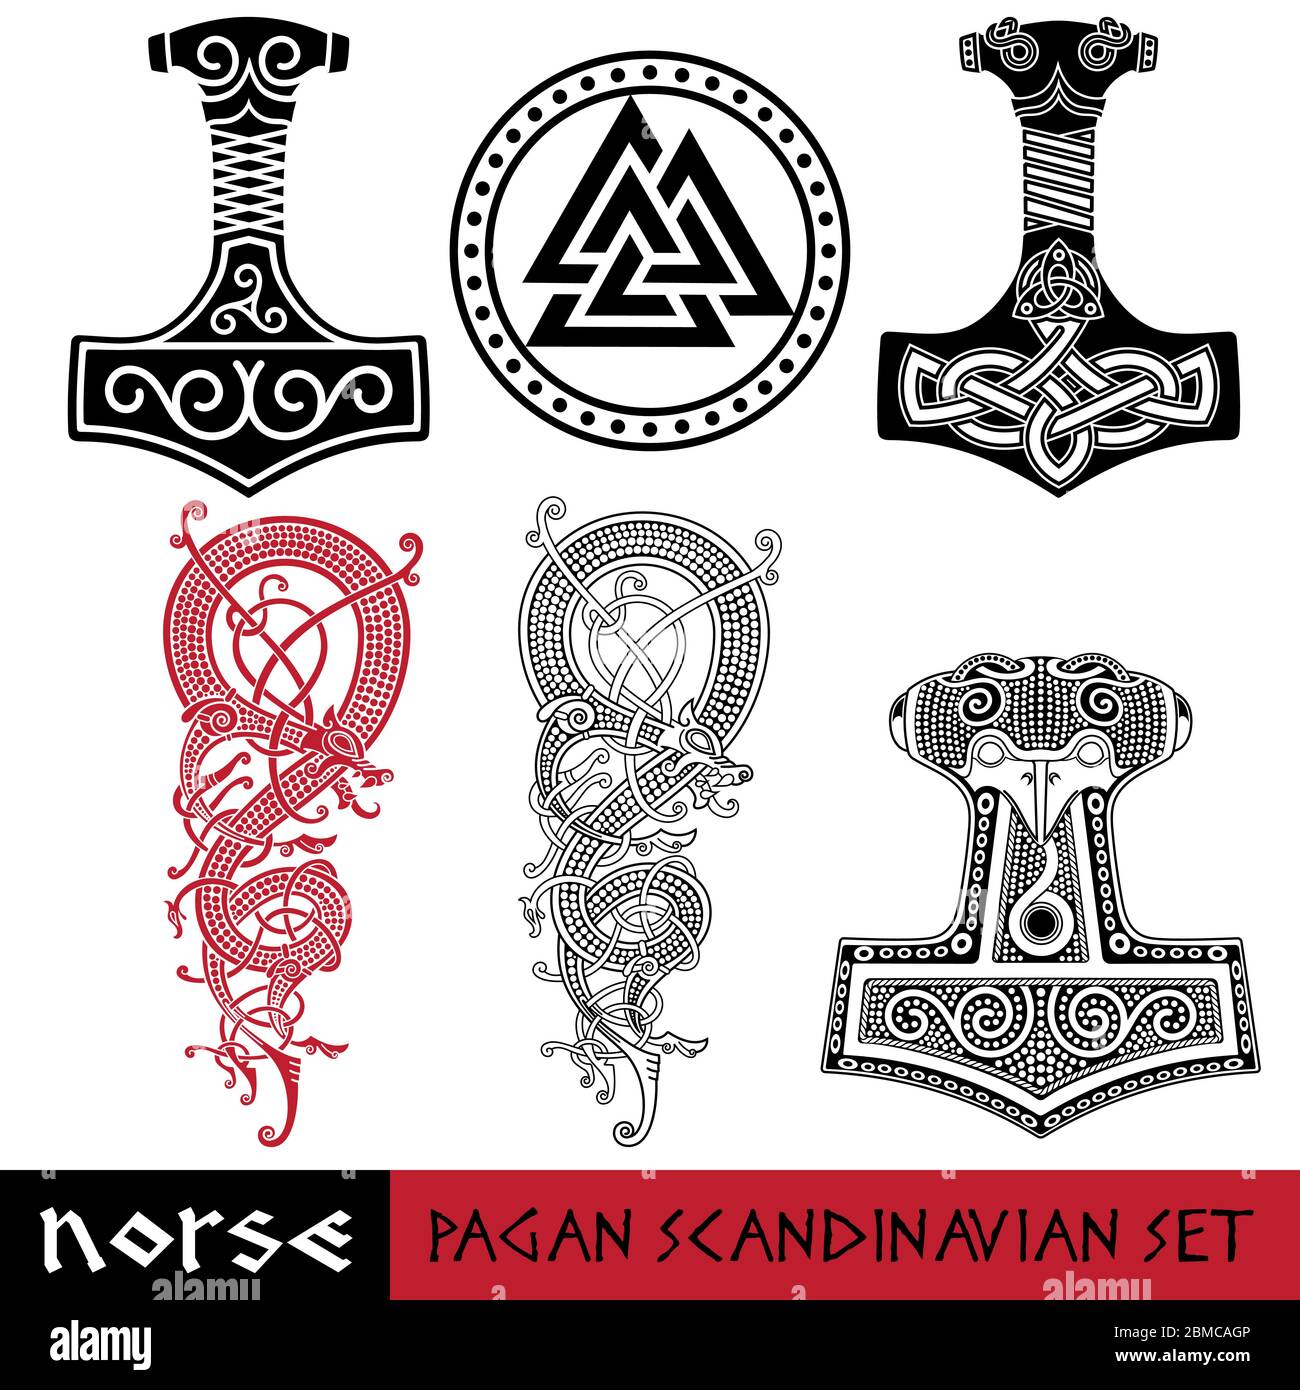 Juego pagano escandinavo - martillo de Thors - Mjollnir, signo de Odín -  Valknut y dragón mundial Jormundgand. Ilustración de la Mitología Nórdica  Imagen Vector de stock - Alamy